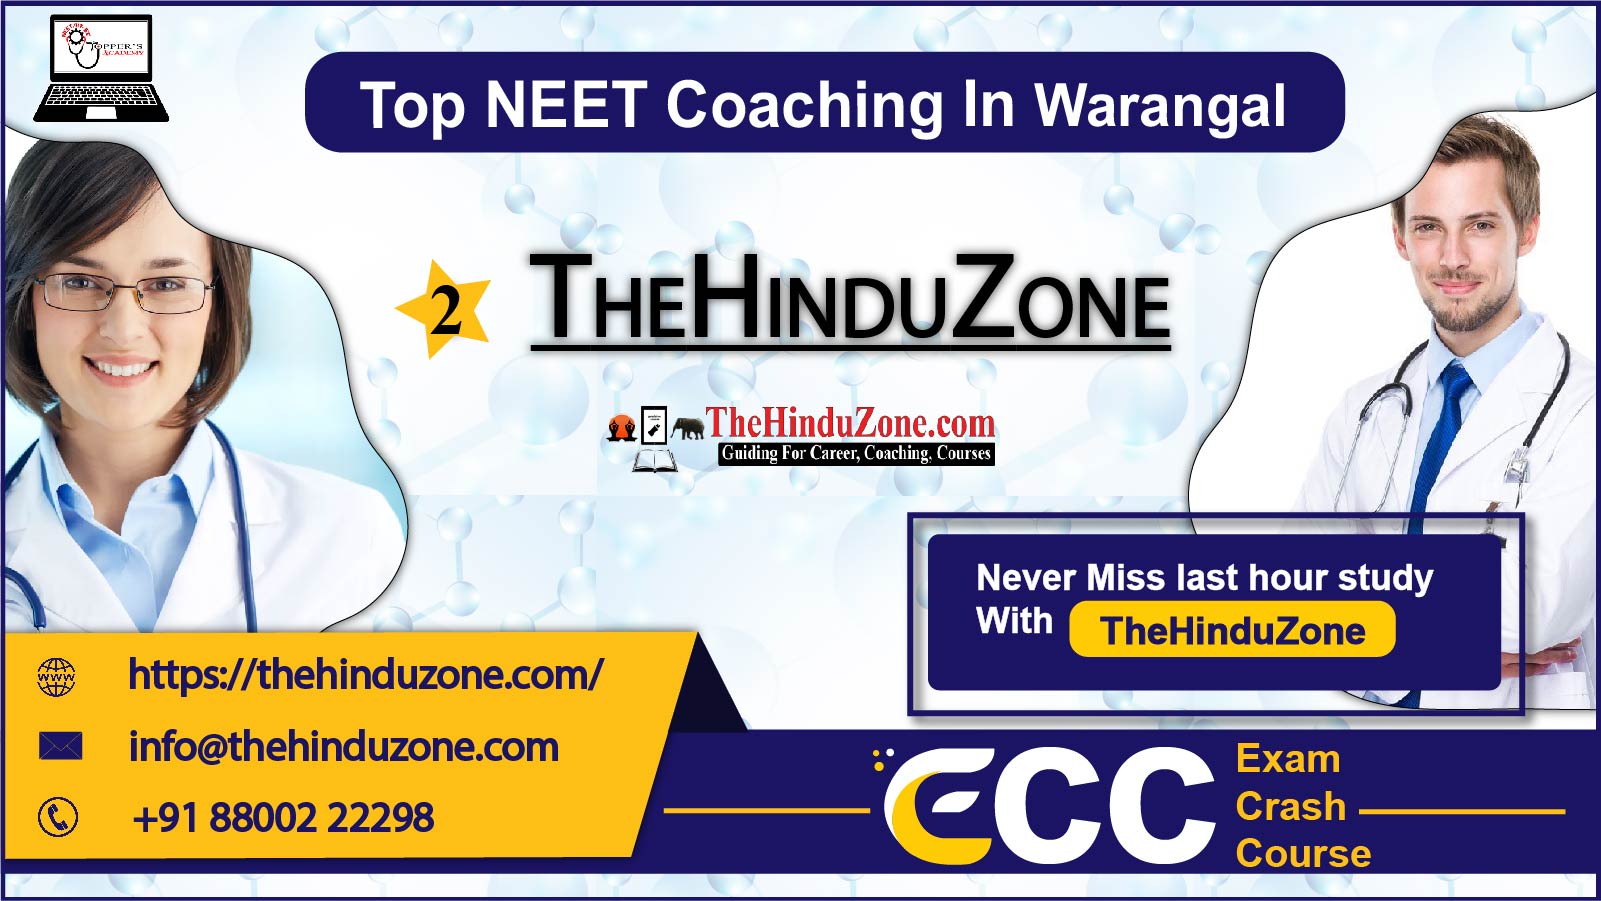 The Hinduzone NEET Coaching in Warangal